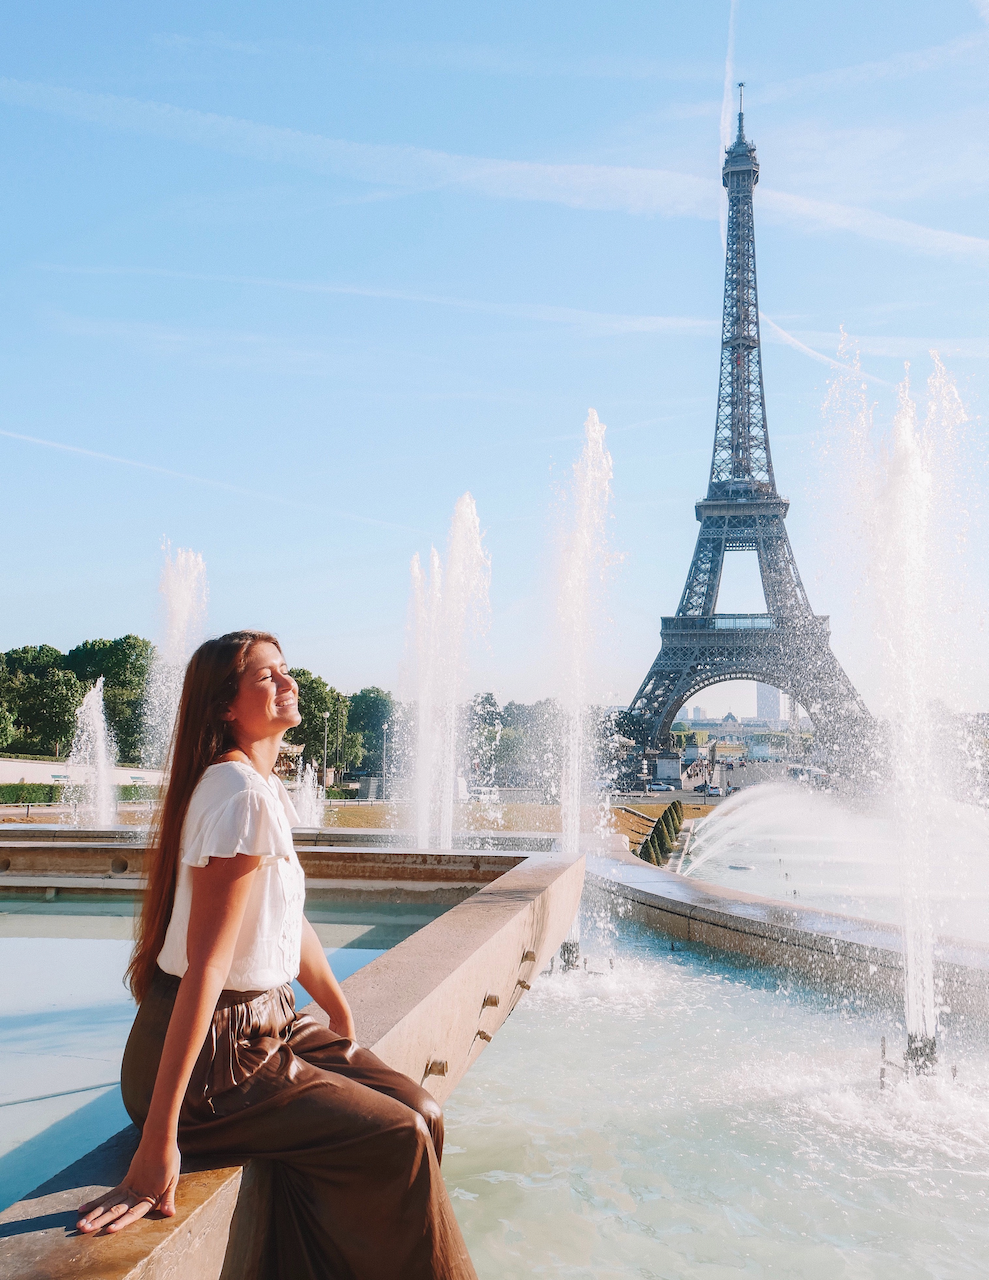 Les jets d'eau devant la Tour Eiffel - Paris - France